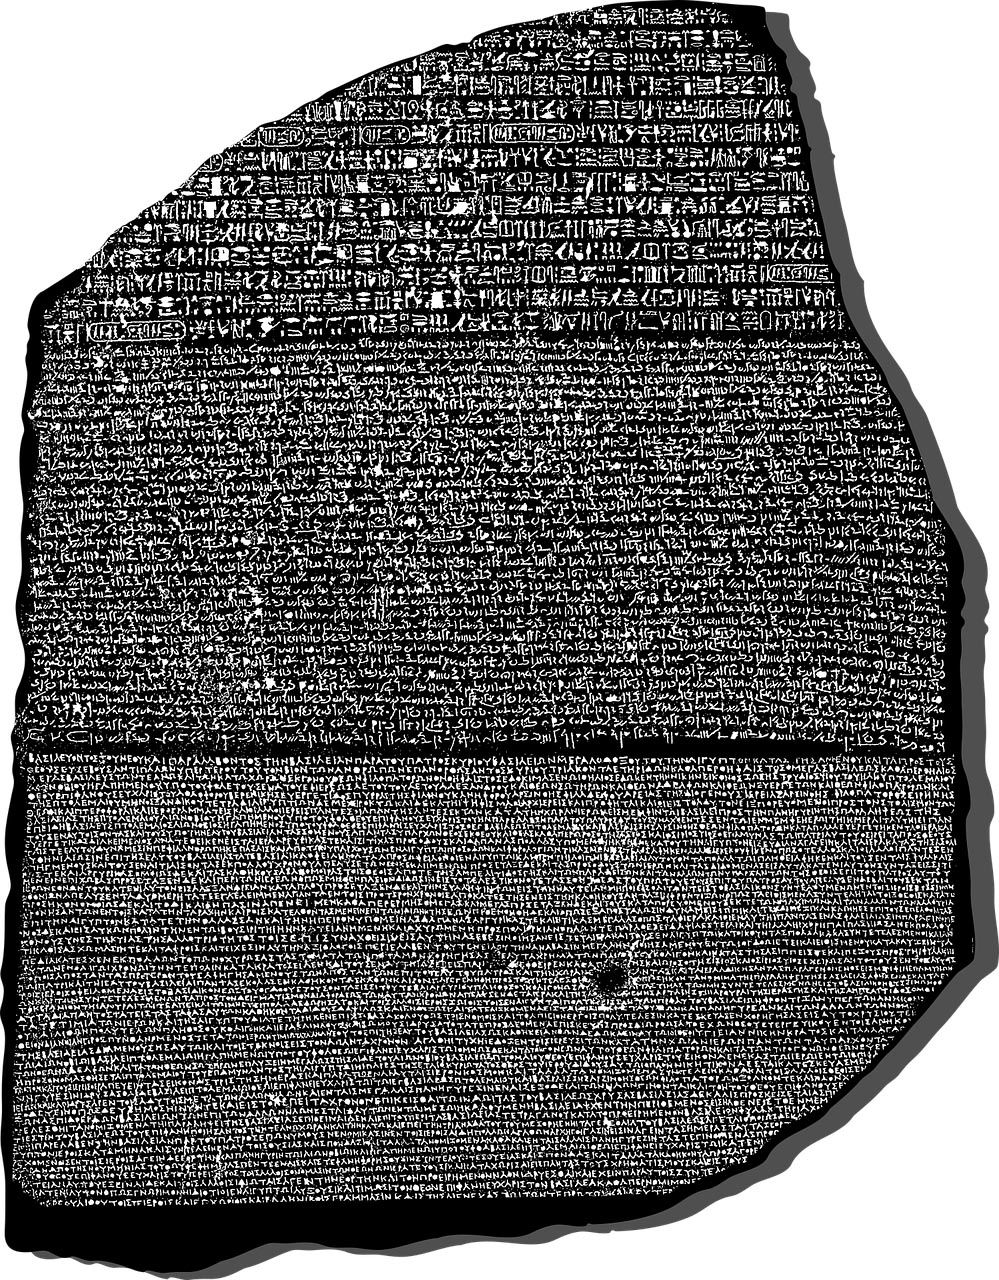 La Piedra de Rosetta